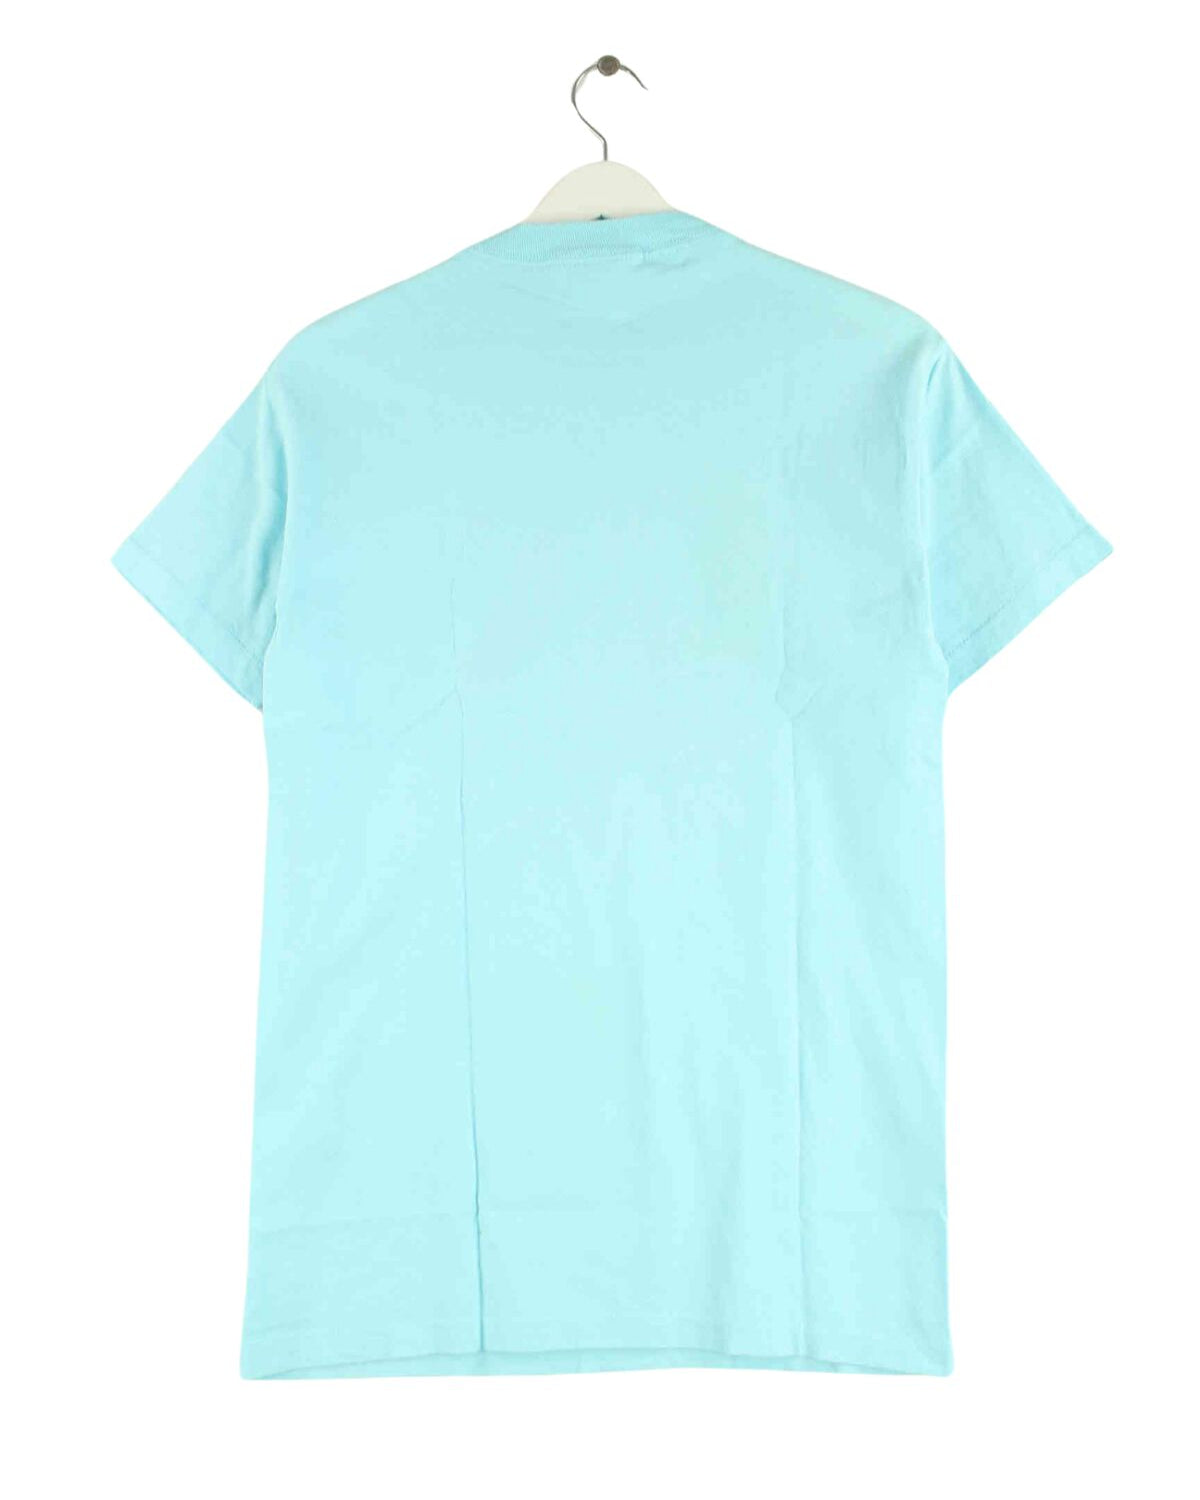 Guess 1992 Print Single Stitch T-Shirt Blau M (back image)